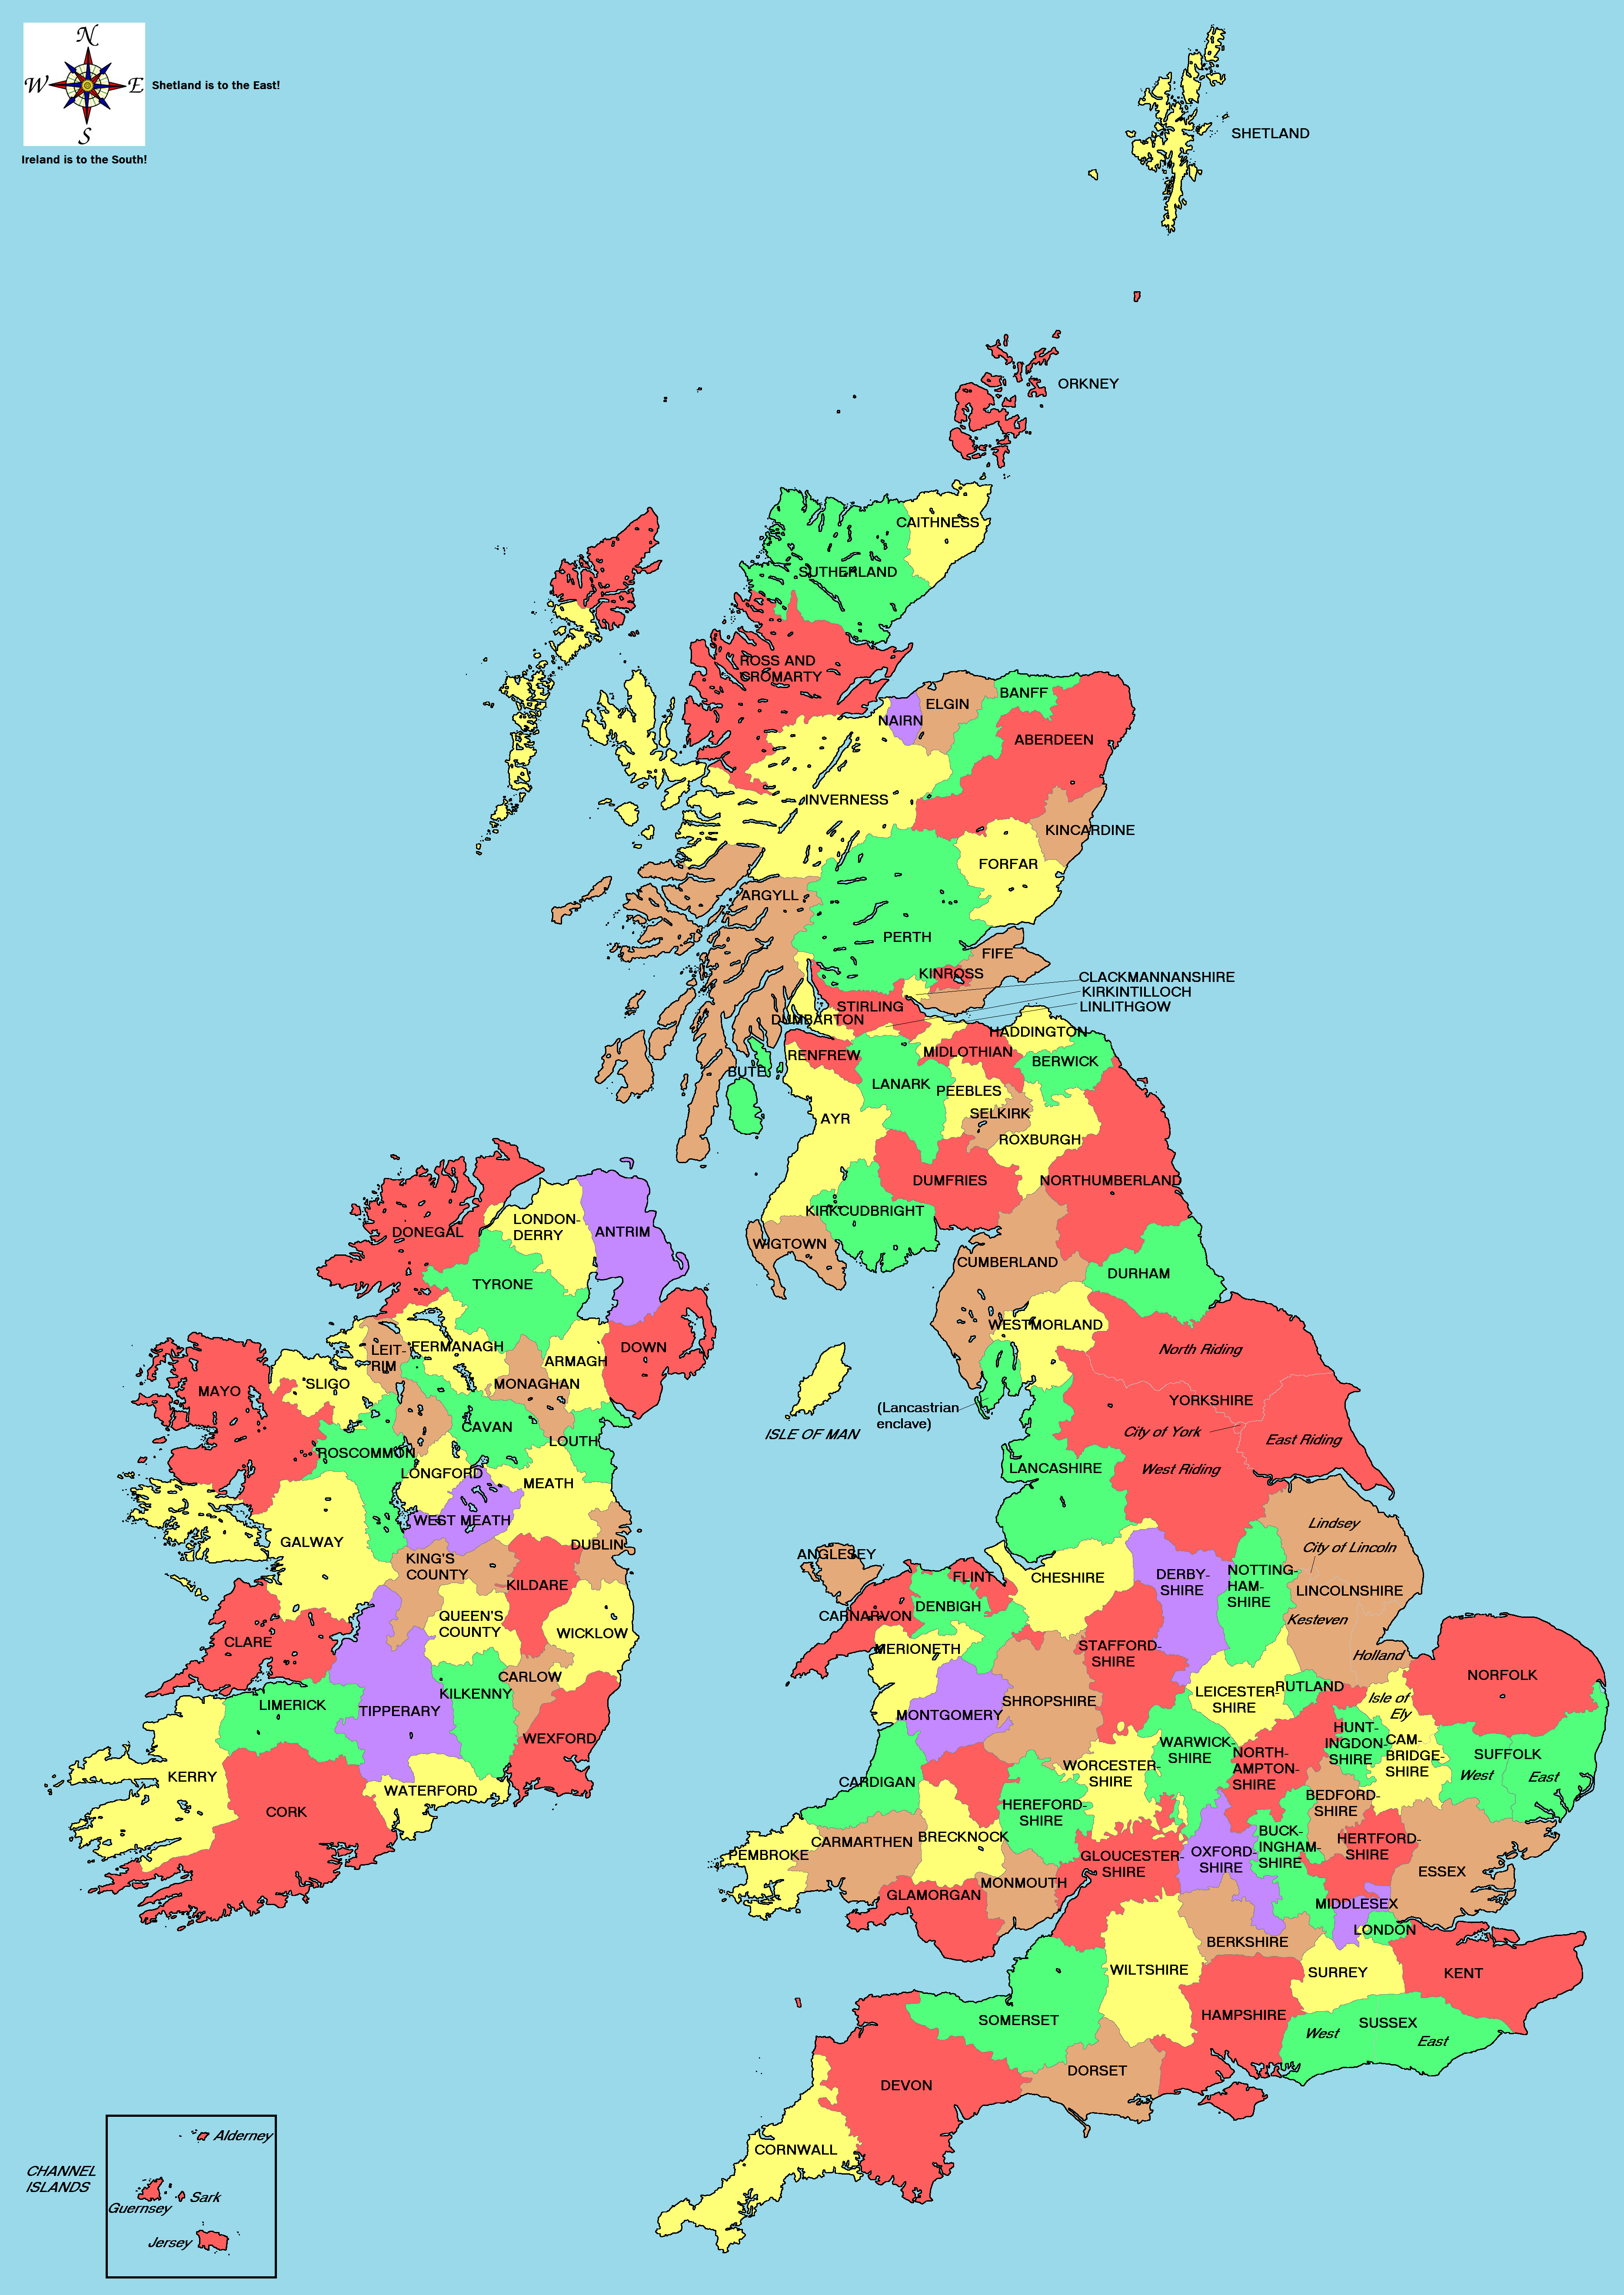 British Counties